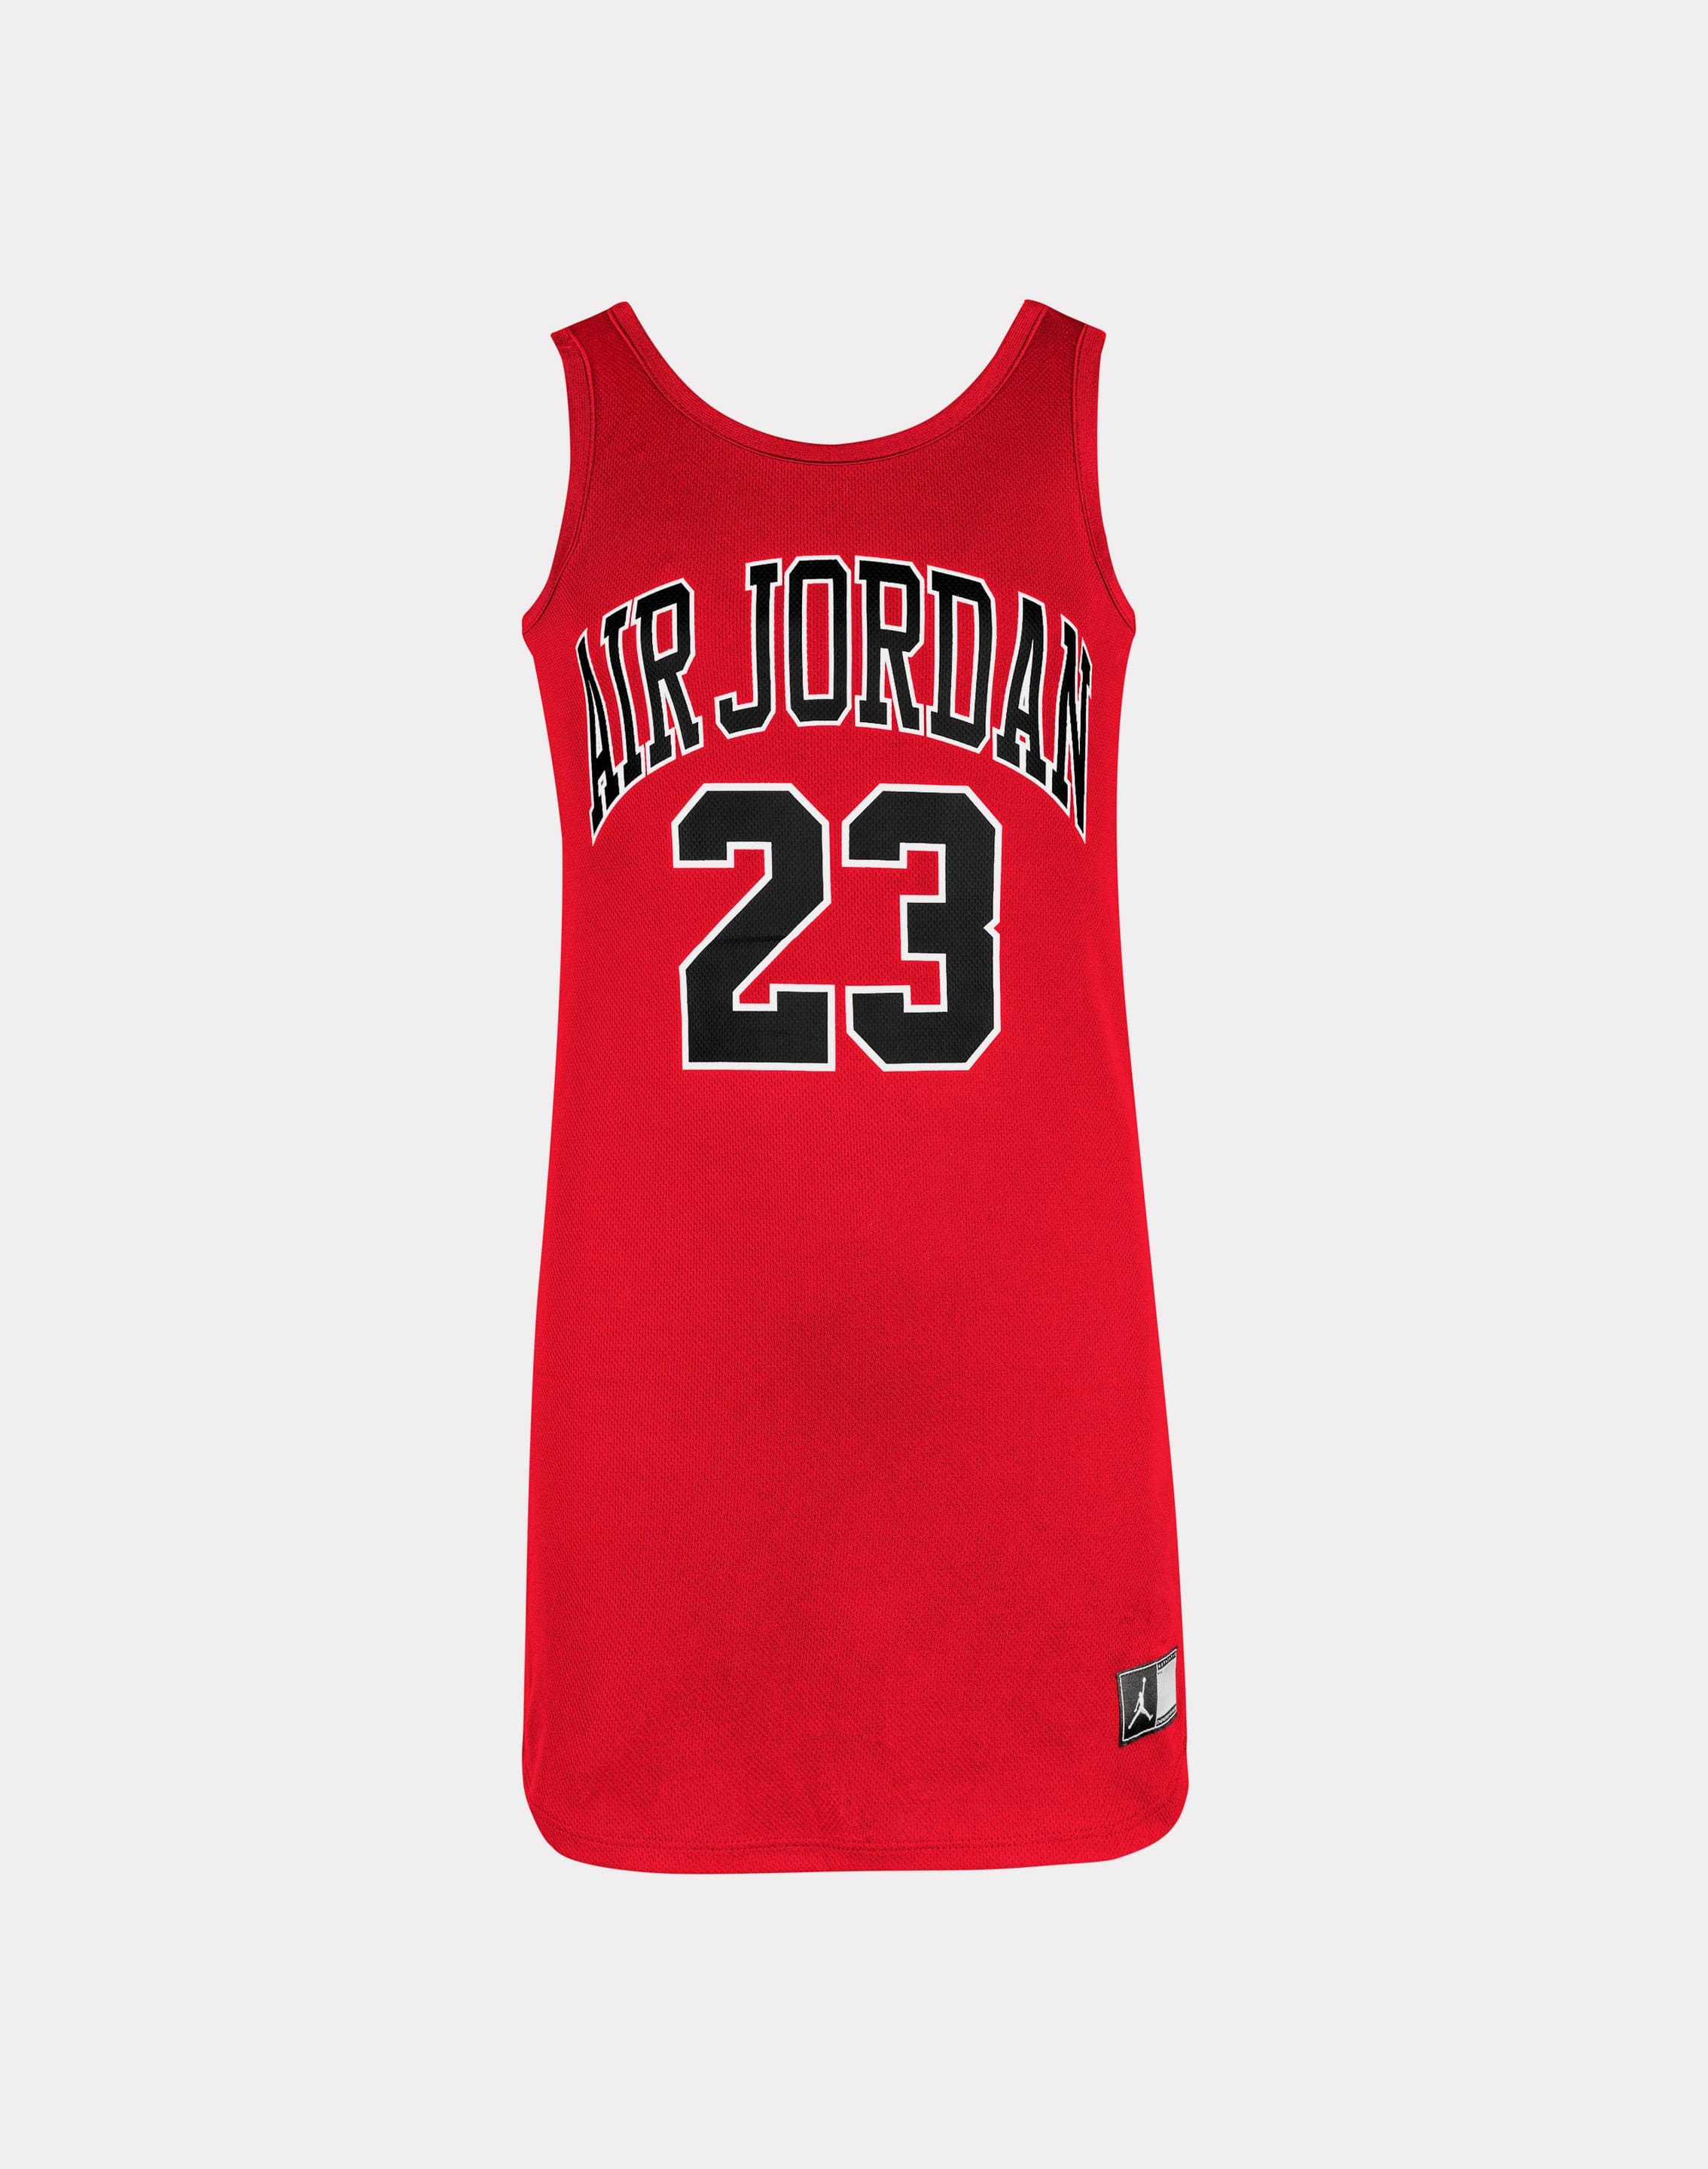 Jordan Jersey Dress #23 red XL - Jordan Jersey Dress - Repur Team